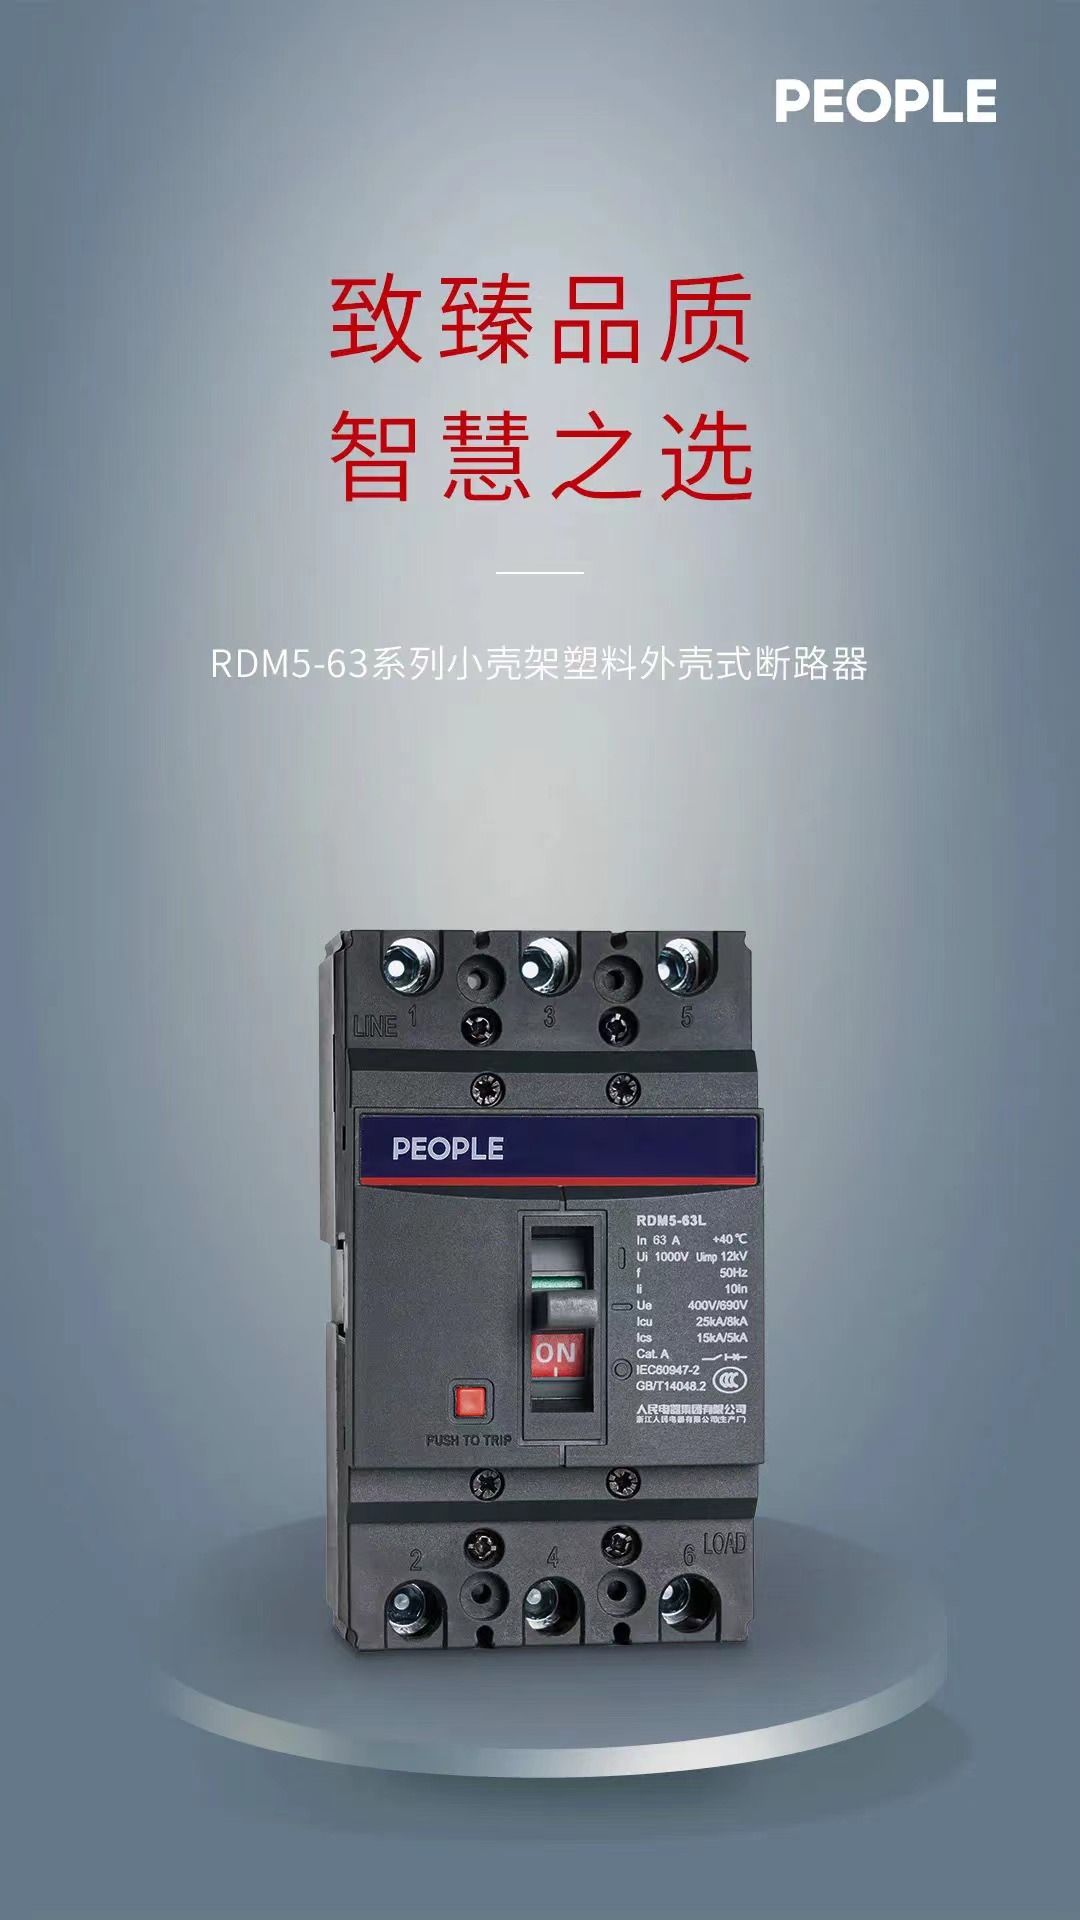 RDM5-63-seriens strömbrytare i plasthus med liten ram, bryter slutresultatet, mer omfattande (1)